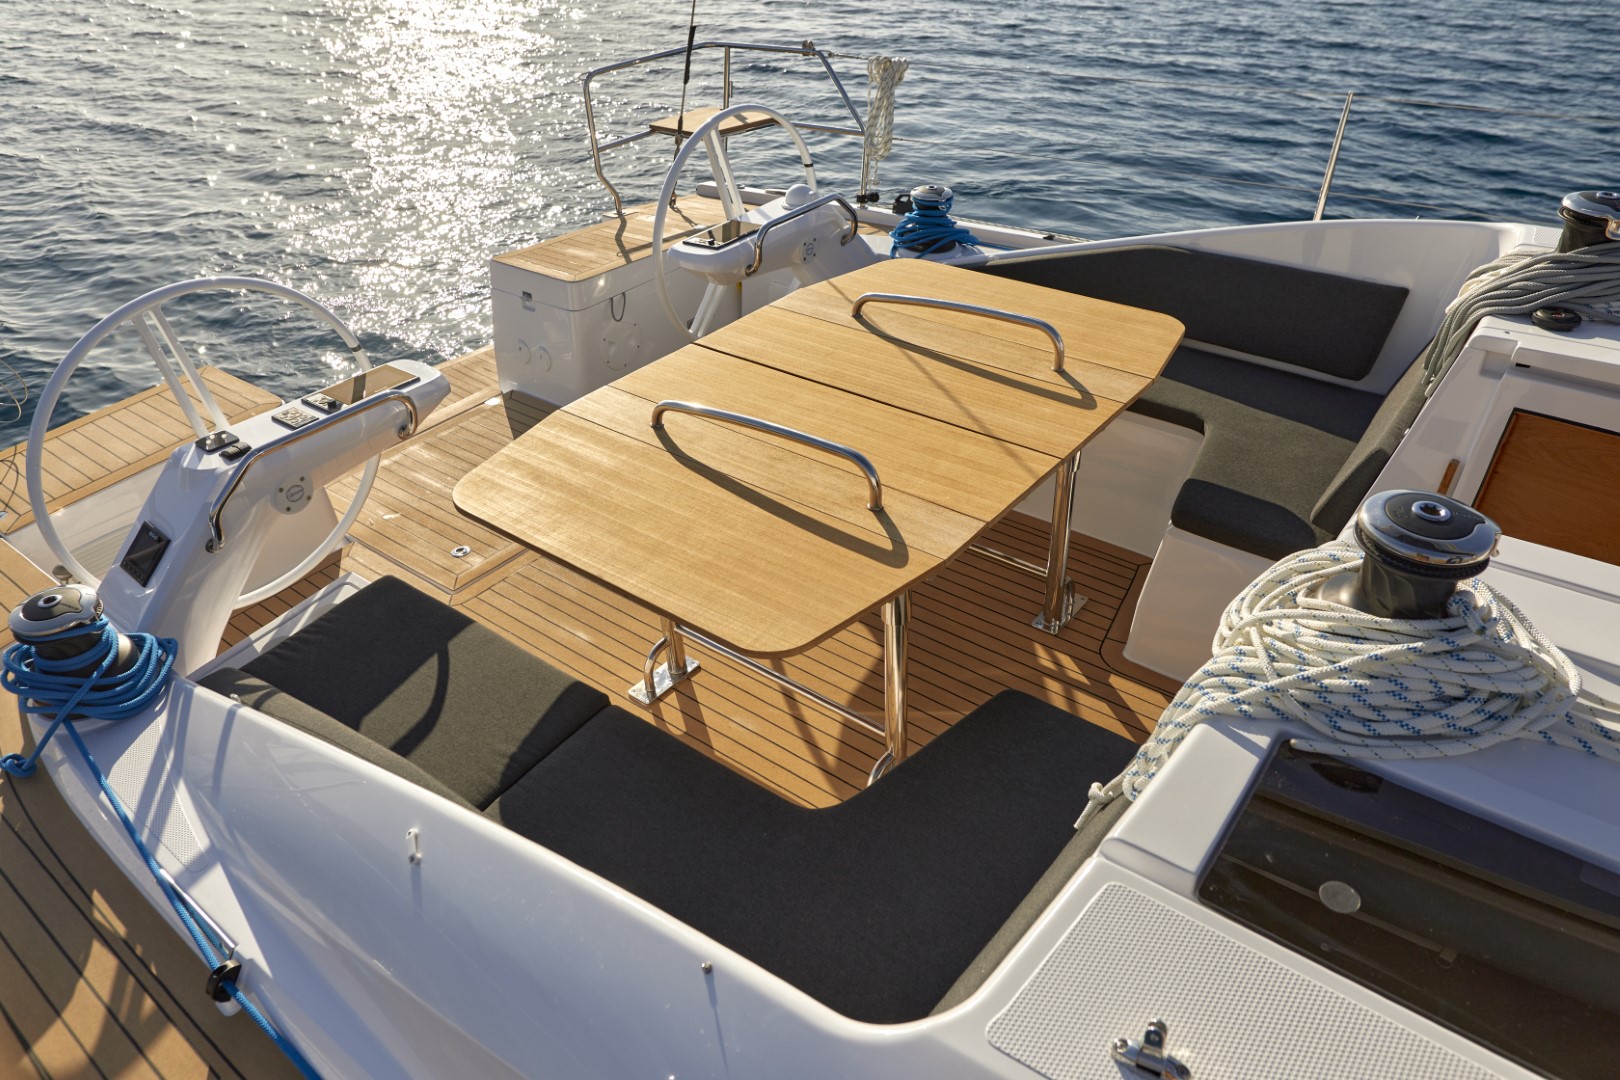 Ein luxuriöses Yachtdeck mit zwei hölzernen Steuerrädern auf beiden Seiten, ausgestattet mit einem Holztisch und gepolsterten Sitzgelegenheiten, sonnendurchflutet auf glitzerndem Wasser während eines idyllischen Segelurlaubs.